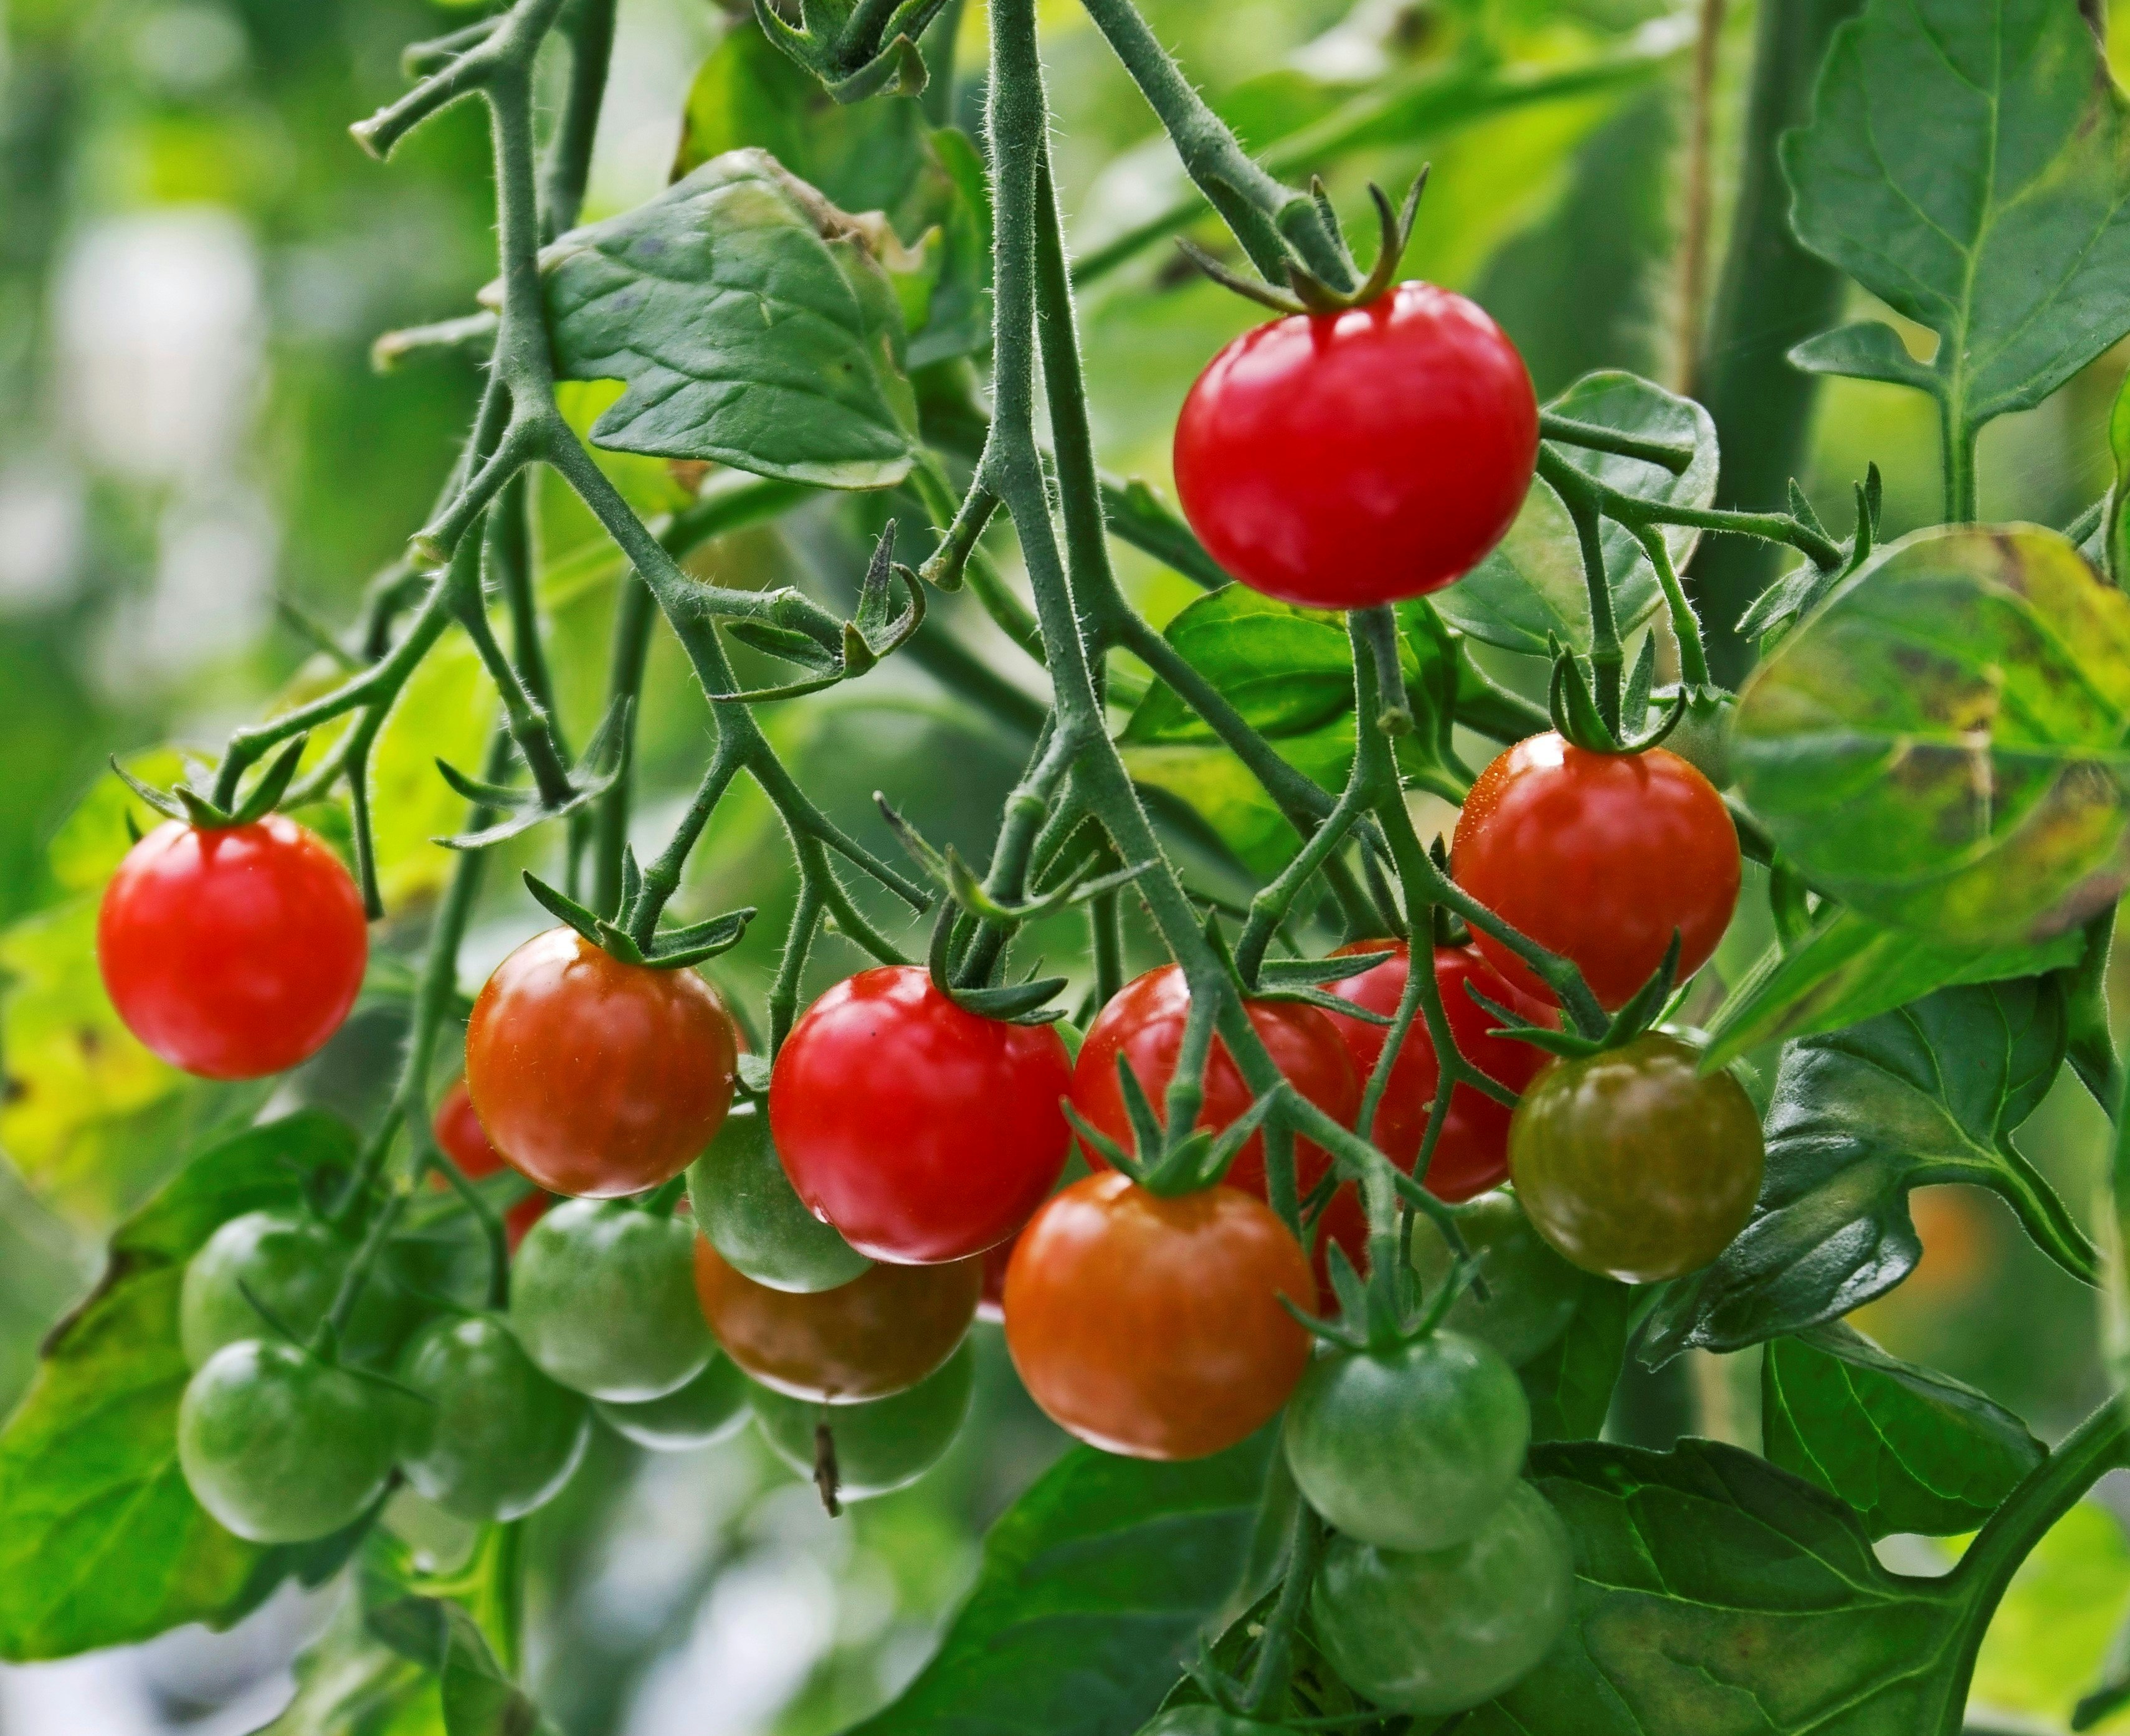 Ydeevne Kommunisme Overskyet Sådan dyrker du tomater med succes | ISABELLAS